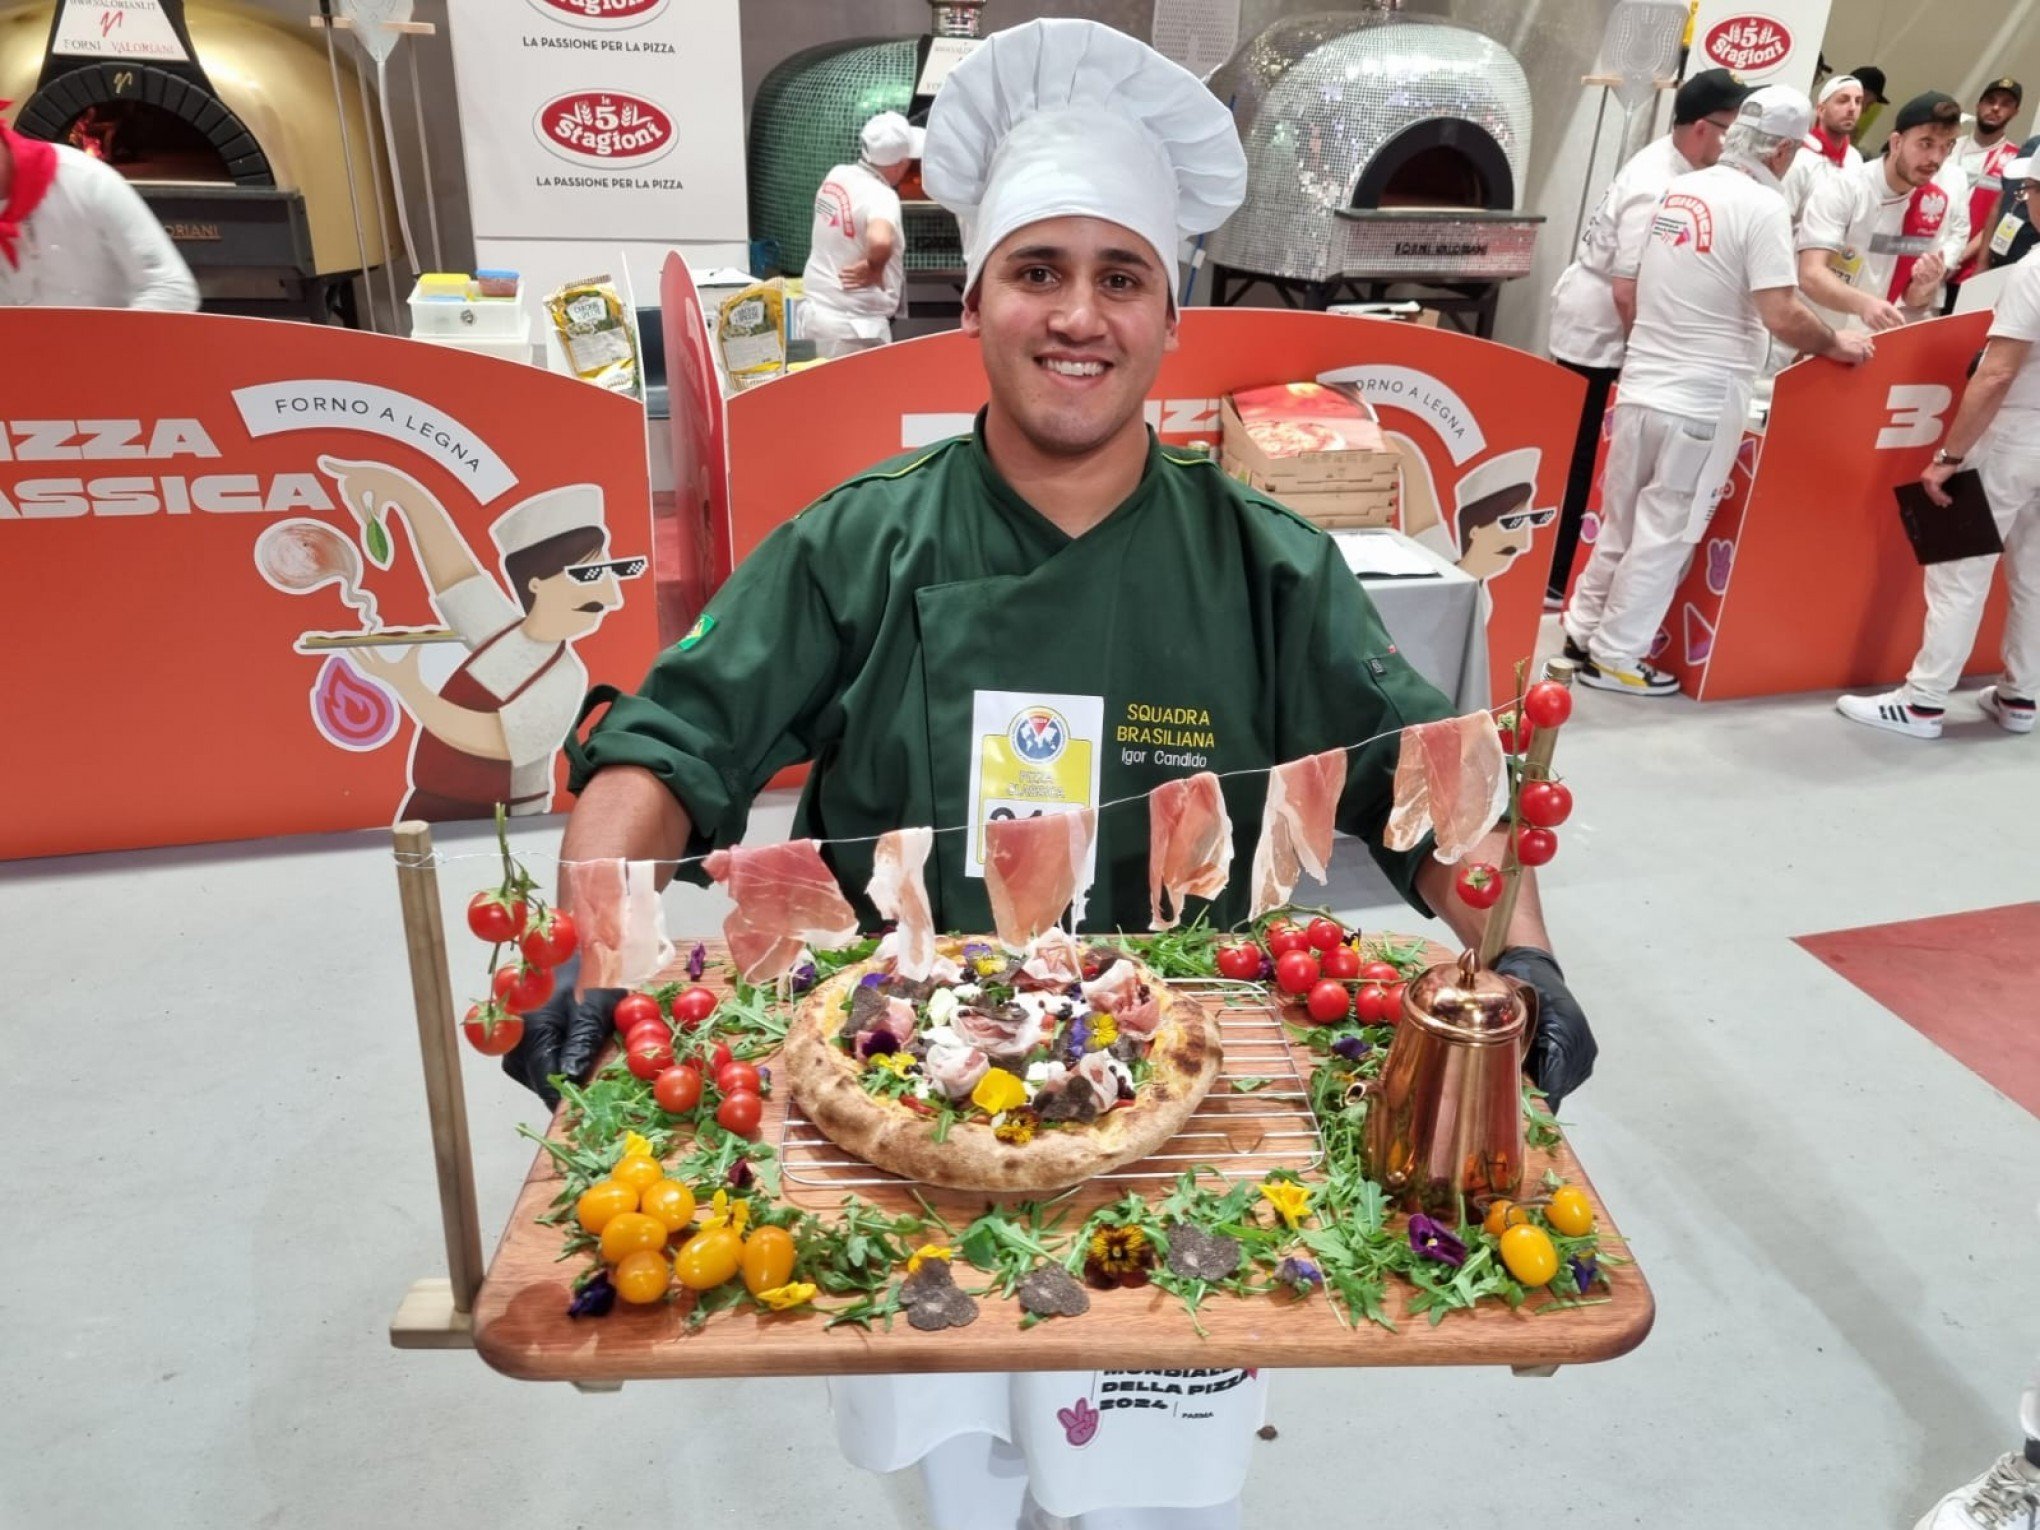 Chef da Serra gaúcha fica entre os 30 melhores em campeonato mundial de pizza na Itália